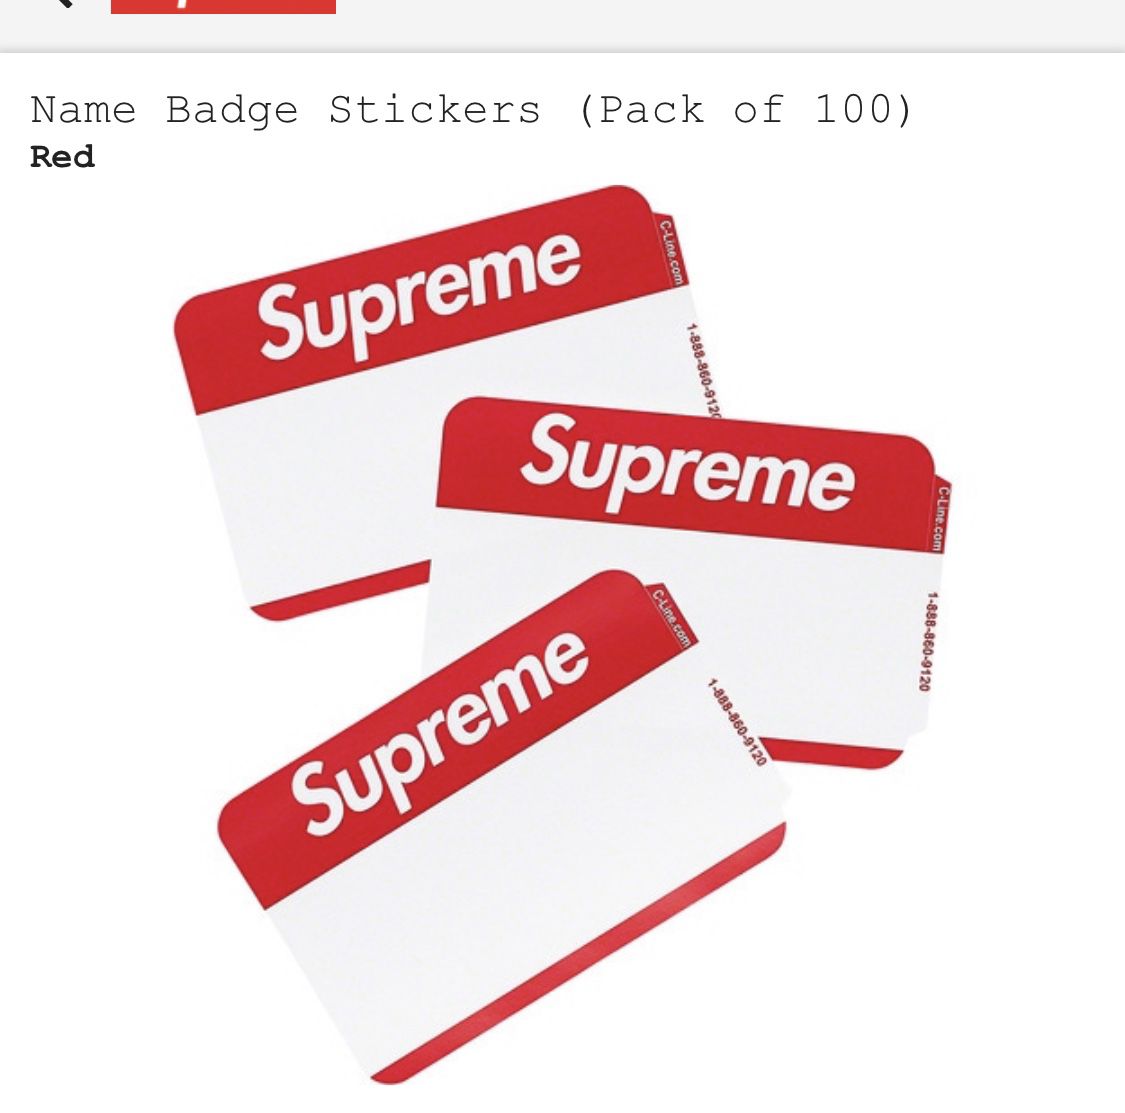 Supreme name stickers